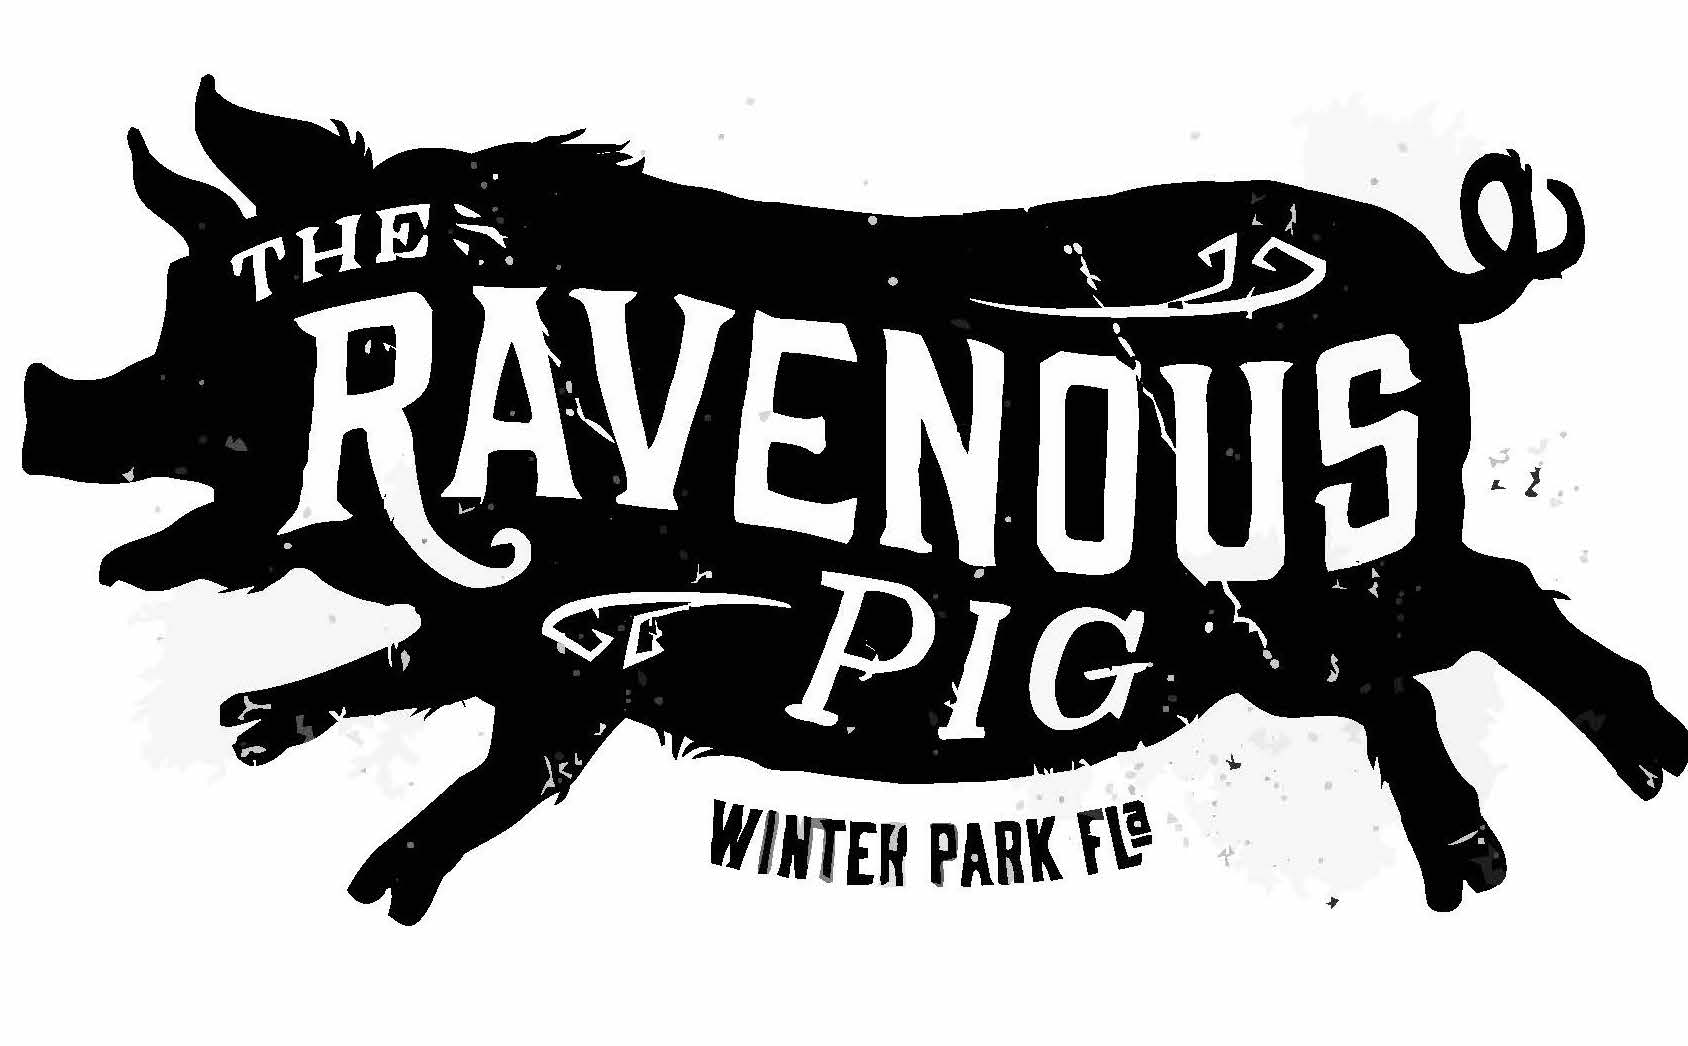 The Ravenous Pig